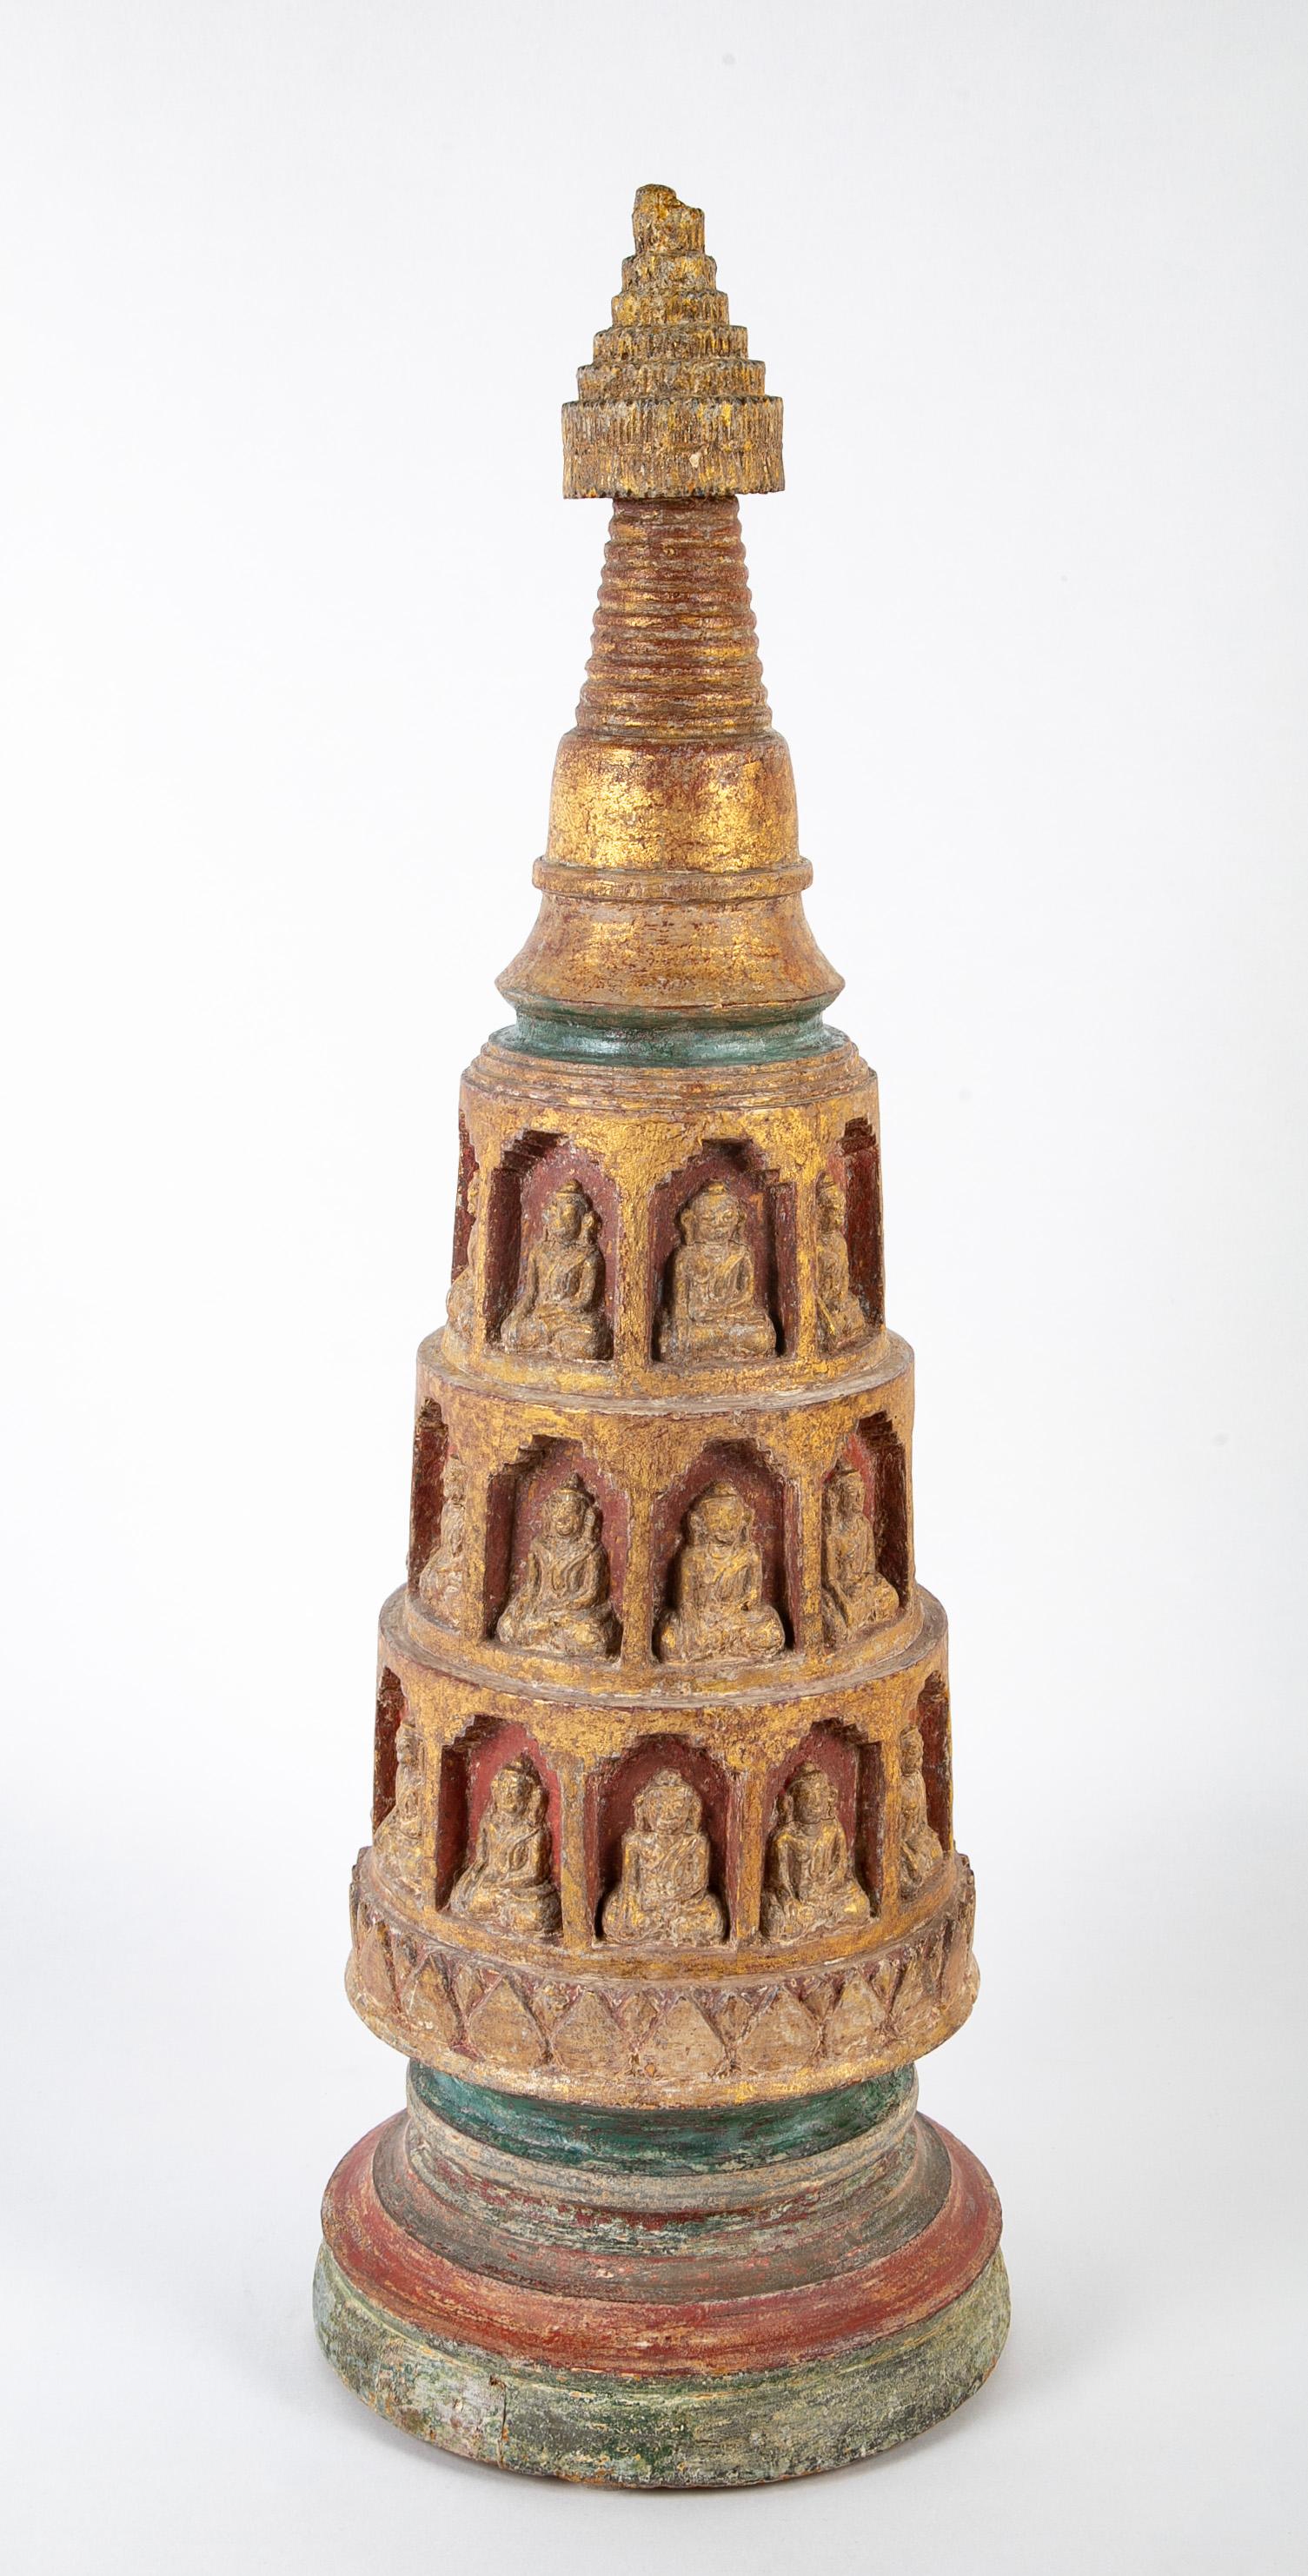 Eine wunderschön geschnitzte Stupa aus der birmanischen Shan-Periode des 18. Jahrhunderts mit vielen sitzenden Buddhas in Nischen. Mit Originalvergoldung und roter und grüner Polychromie. 
Der Stupa ist ein buddhistisches architektonisches Denkmal